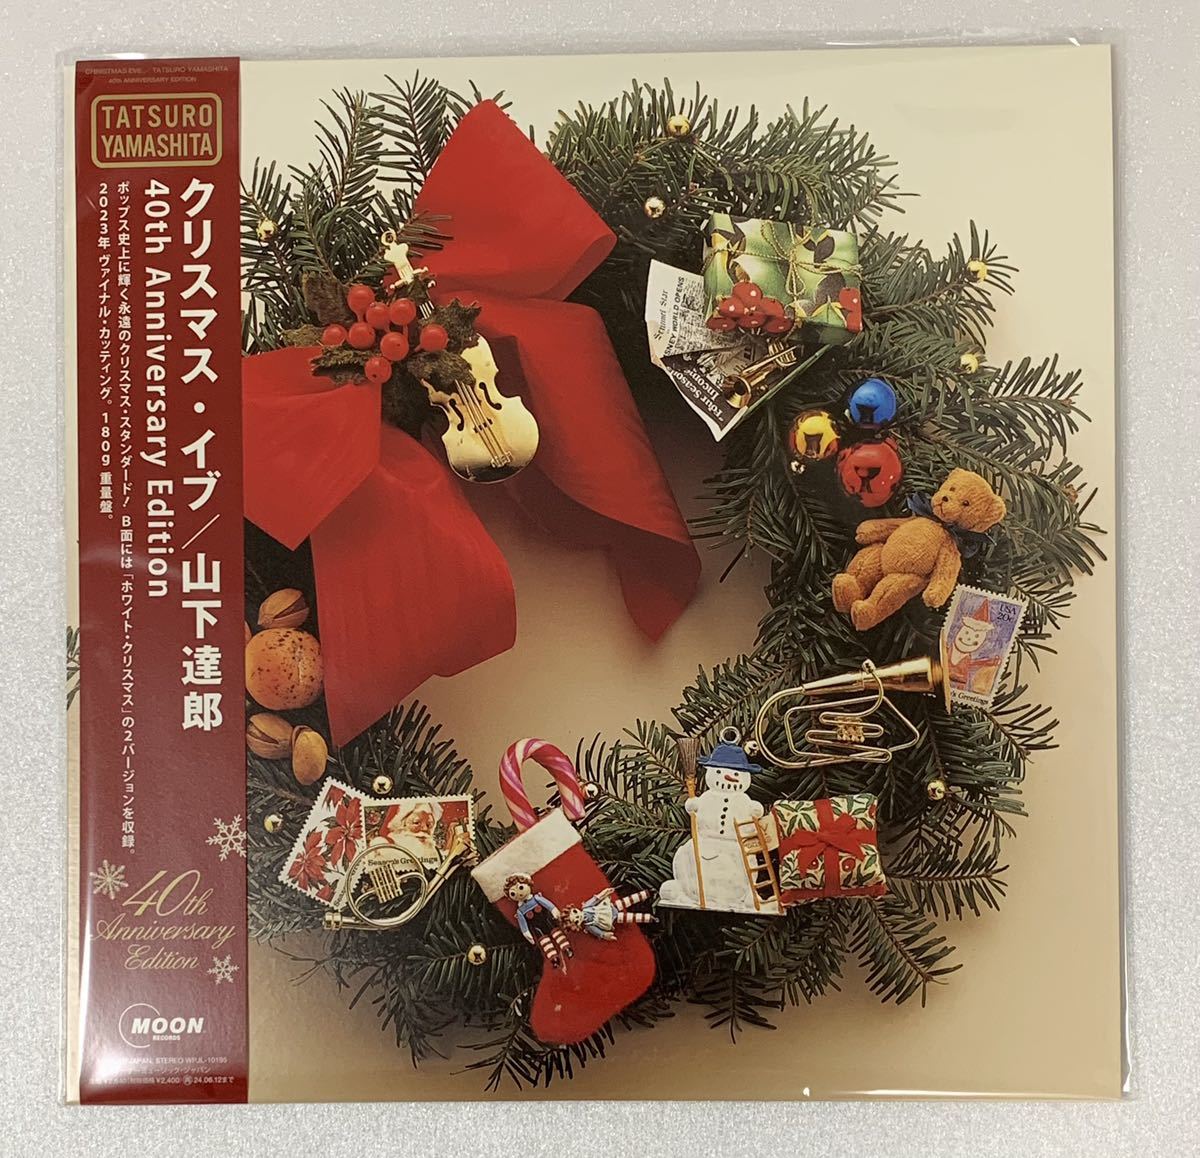 新品 山下達郎 クリスマス・イブ (40th Anniversary Edition) Analog レコード 完全生産限定盤の画像1